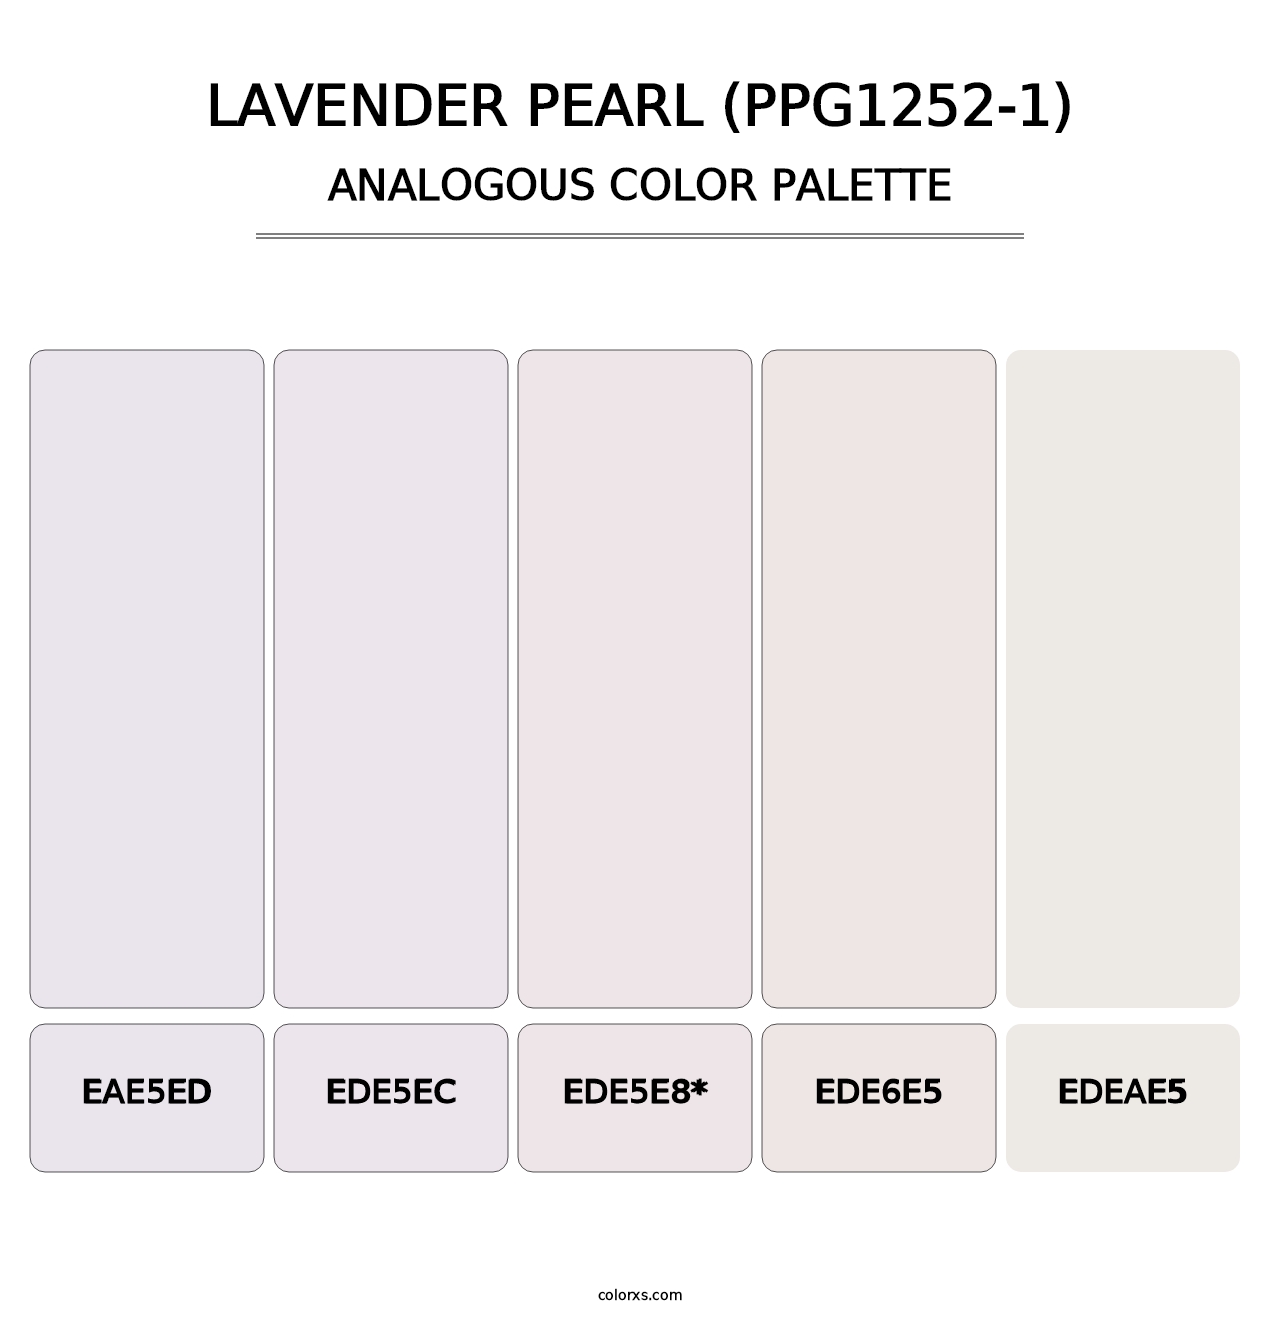 Lavender Pearl (PPG1252-1) - Analogous Color Palette